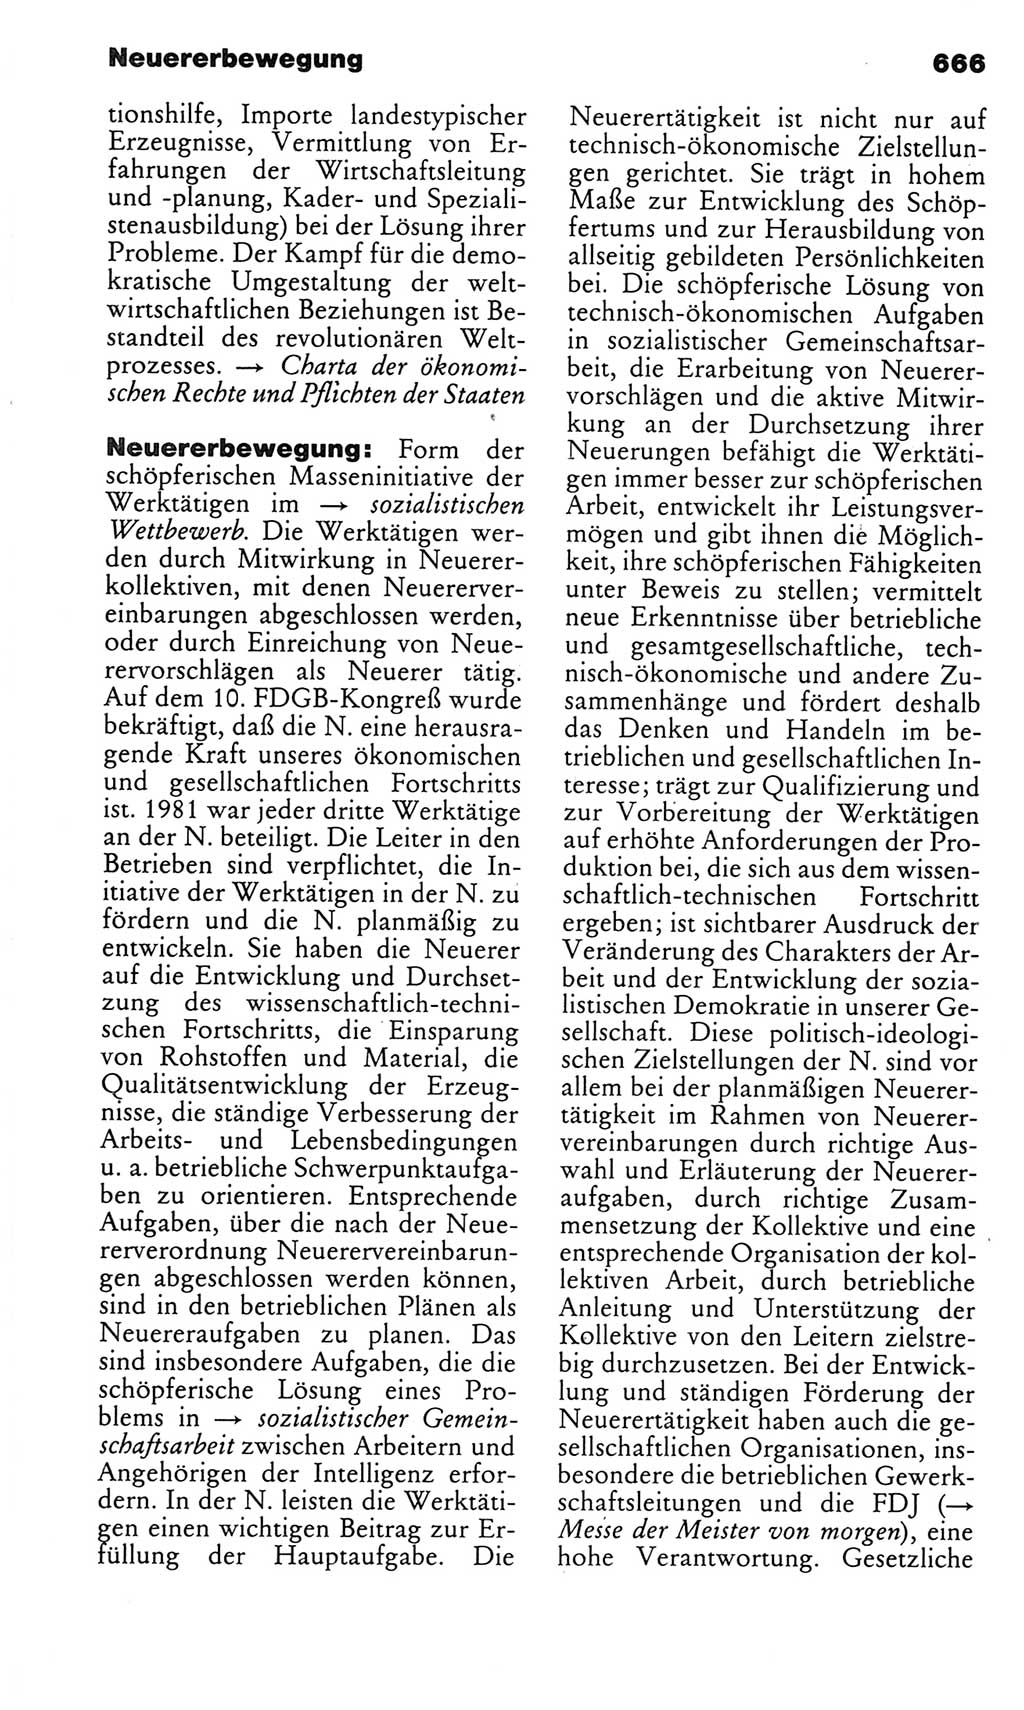 Kleines politisches Wörterbuch [Deutsche Demokratische Republik (DDR)] 1983, Seite 666 (Kl. pol. Wb. DDR 1983, S. 666)